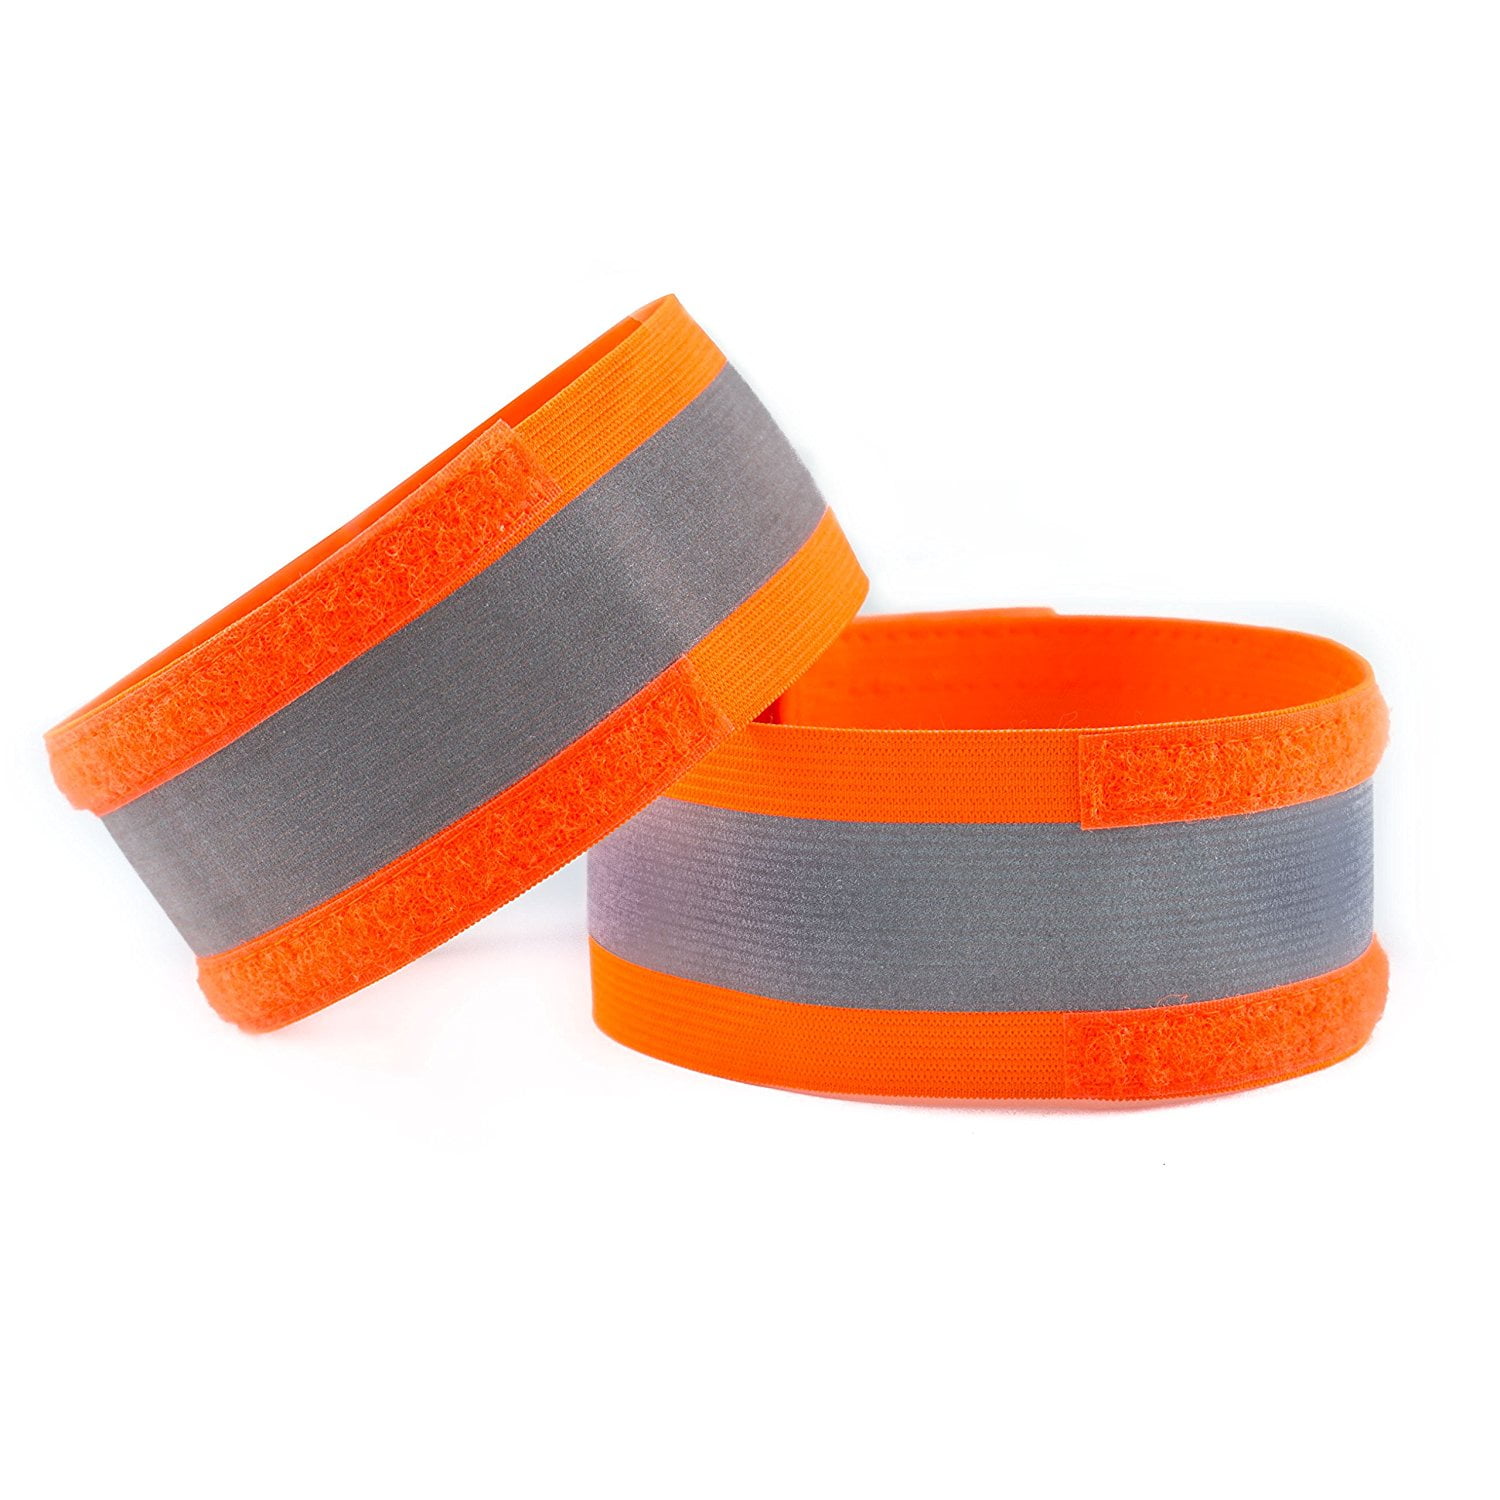 RK High Visibility Reflective Bands 4 Pack Armbands Hi-Viz Safety Gear for Running Biking Running Bracelets Wrist Bands Walking